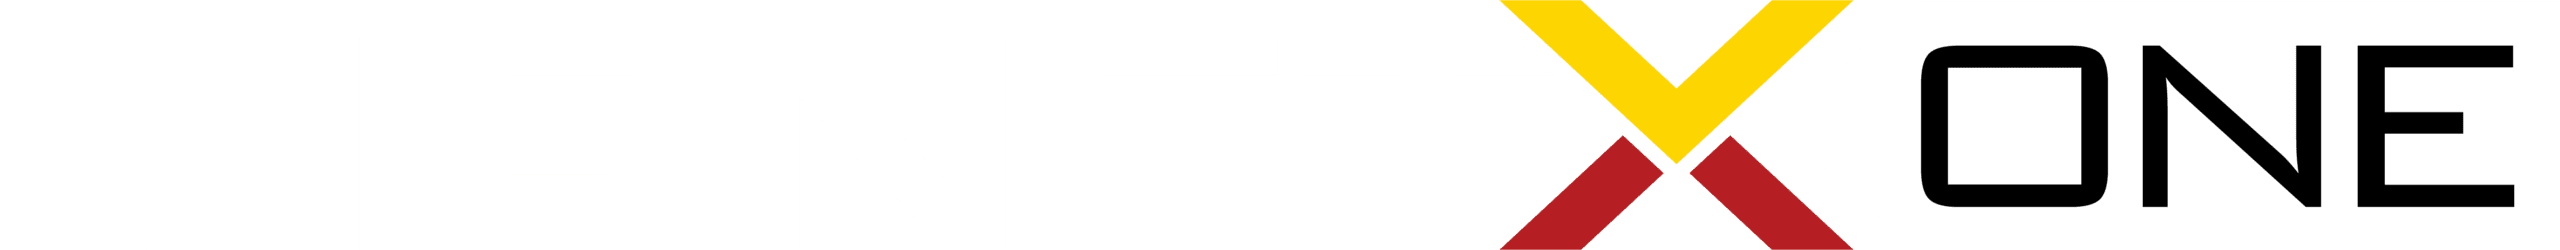 VirnetXONE white logo